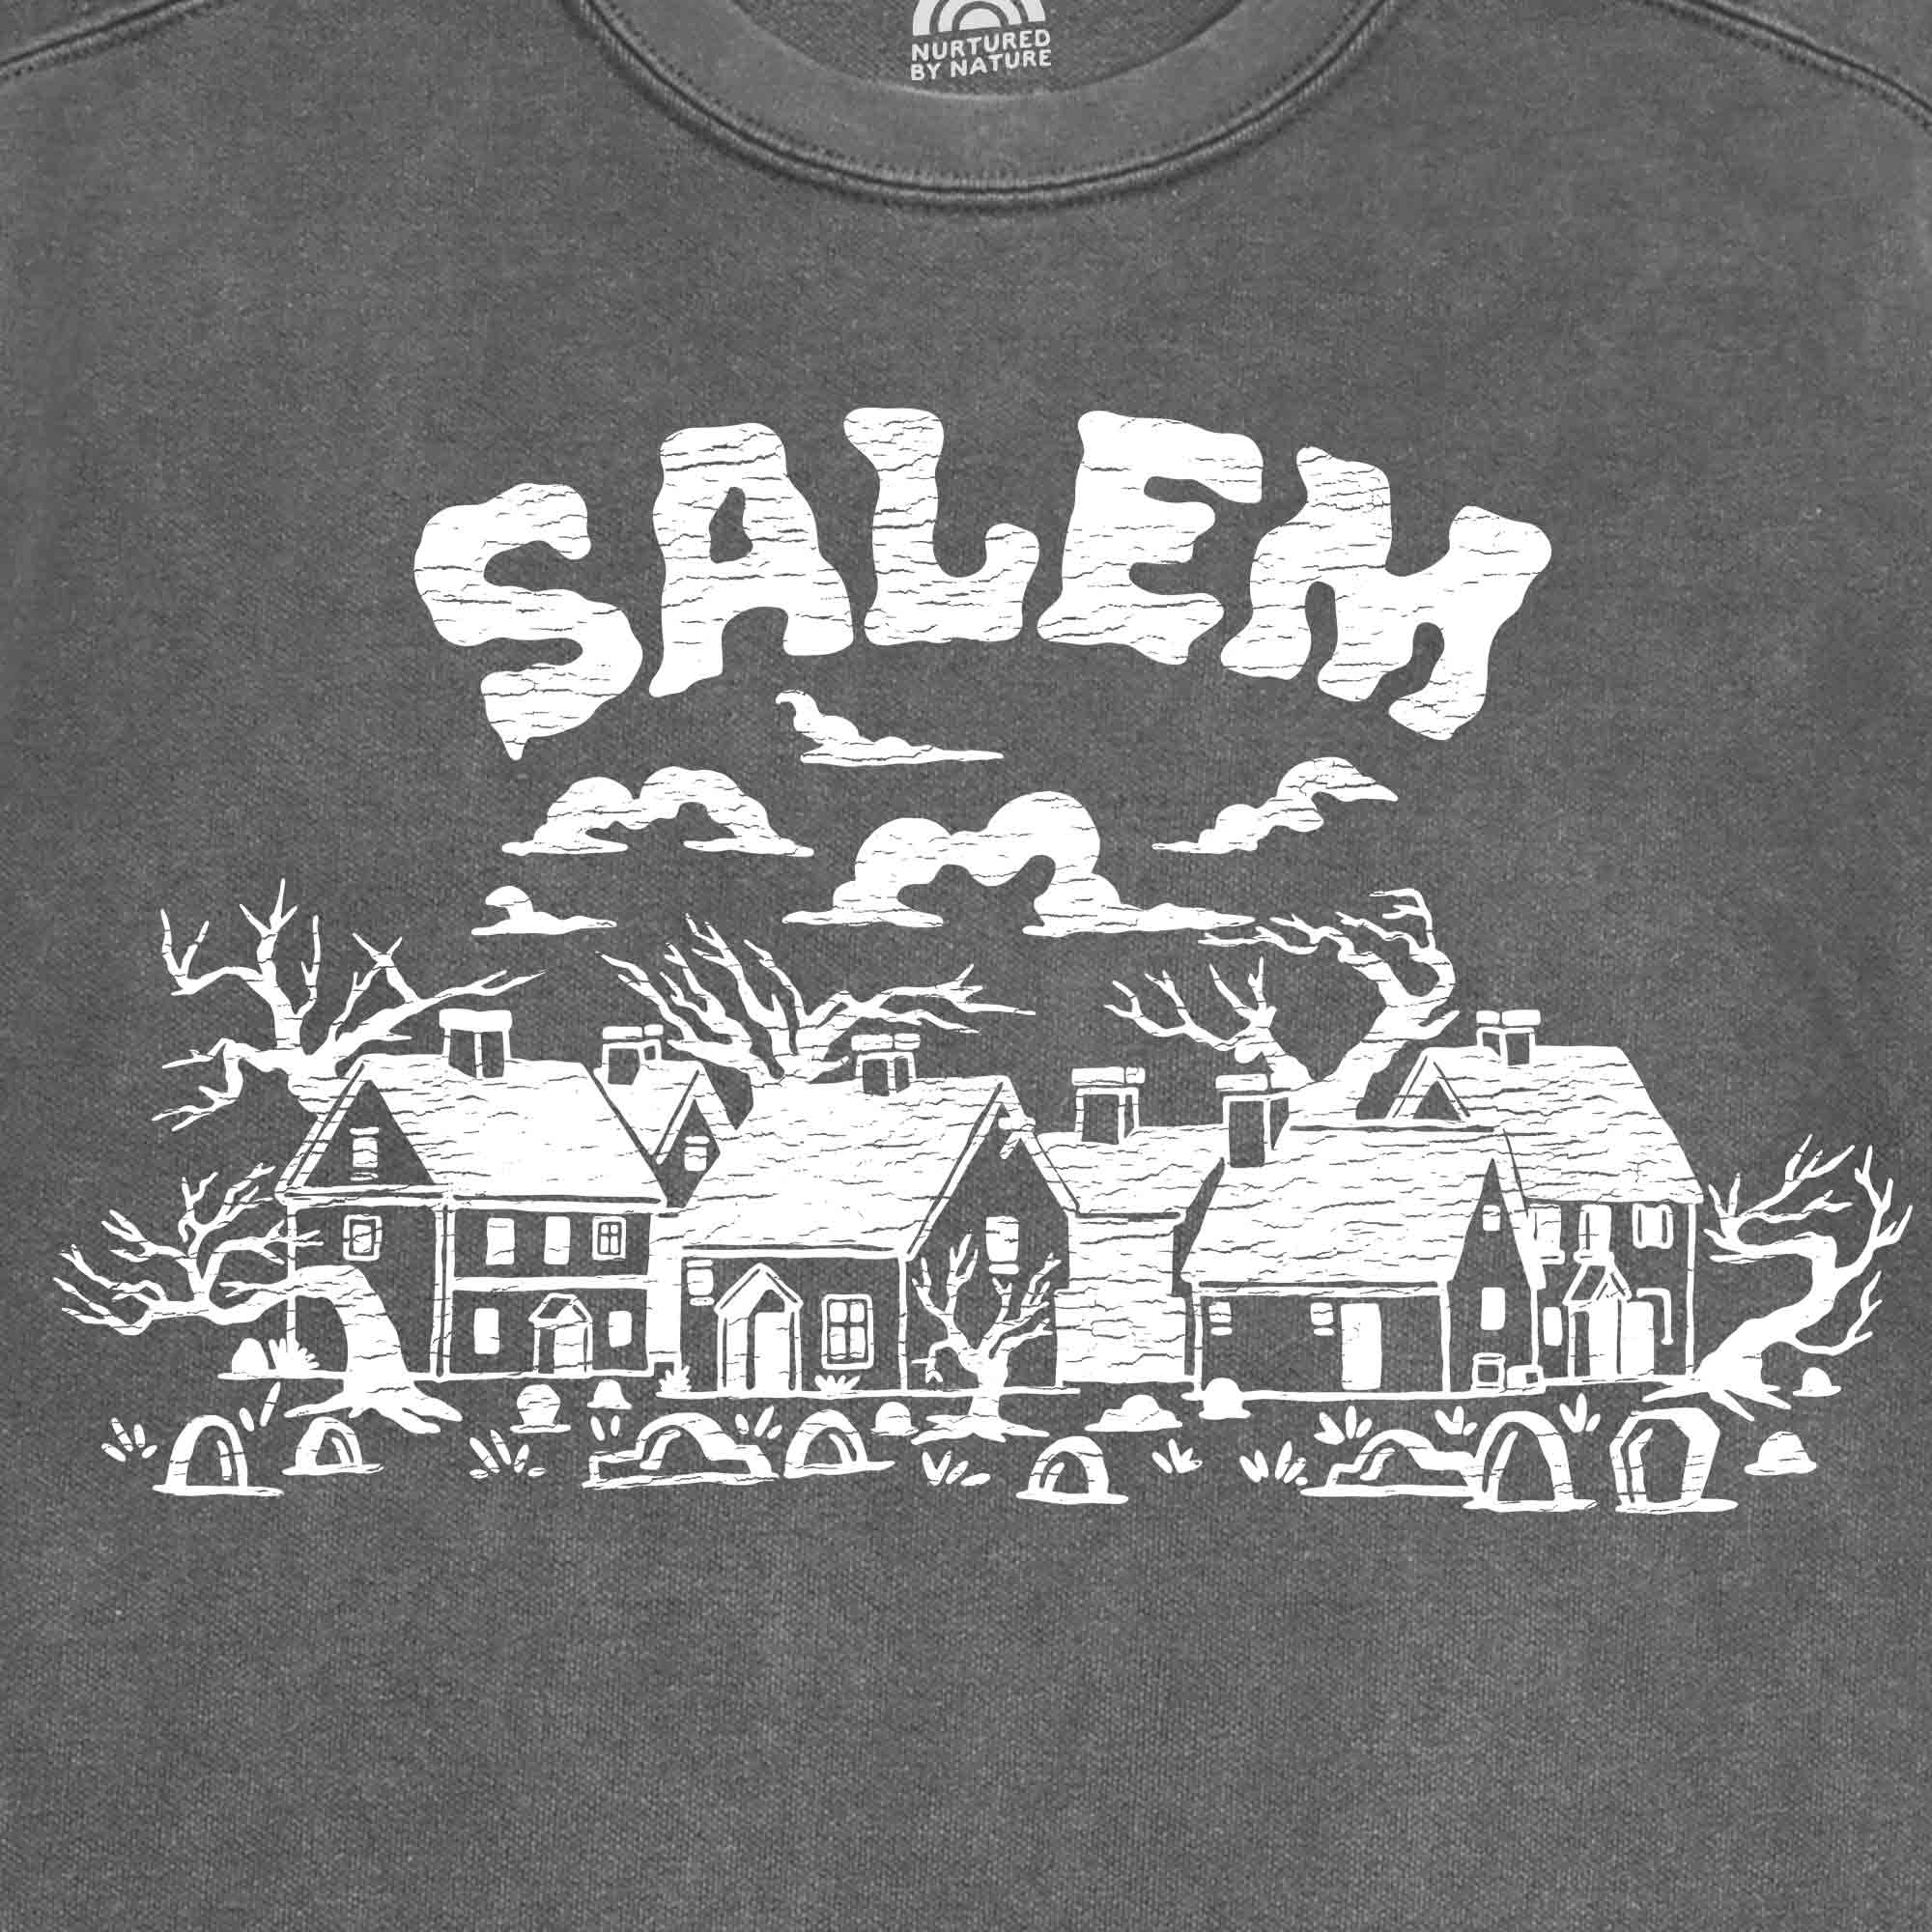 Salem Village Vintage Wash Crewneck